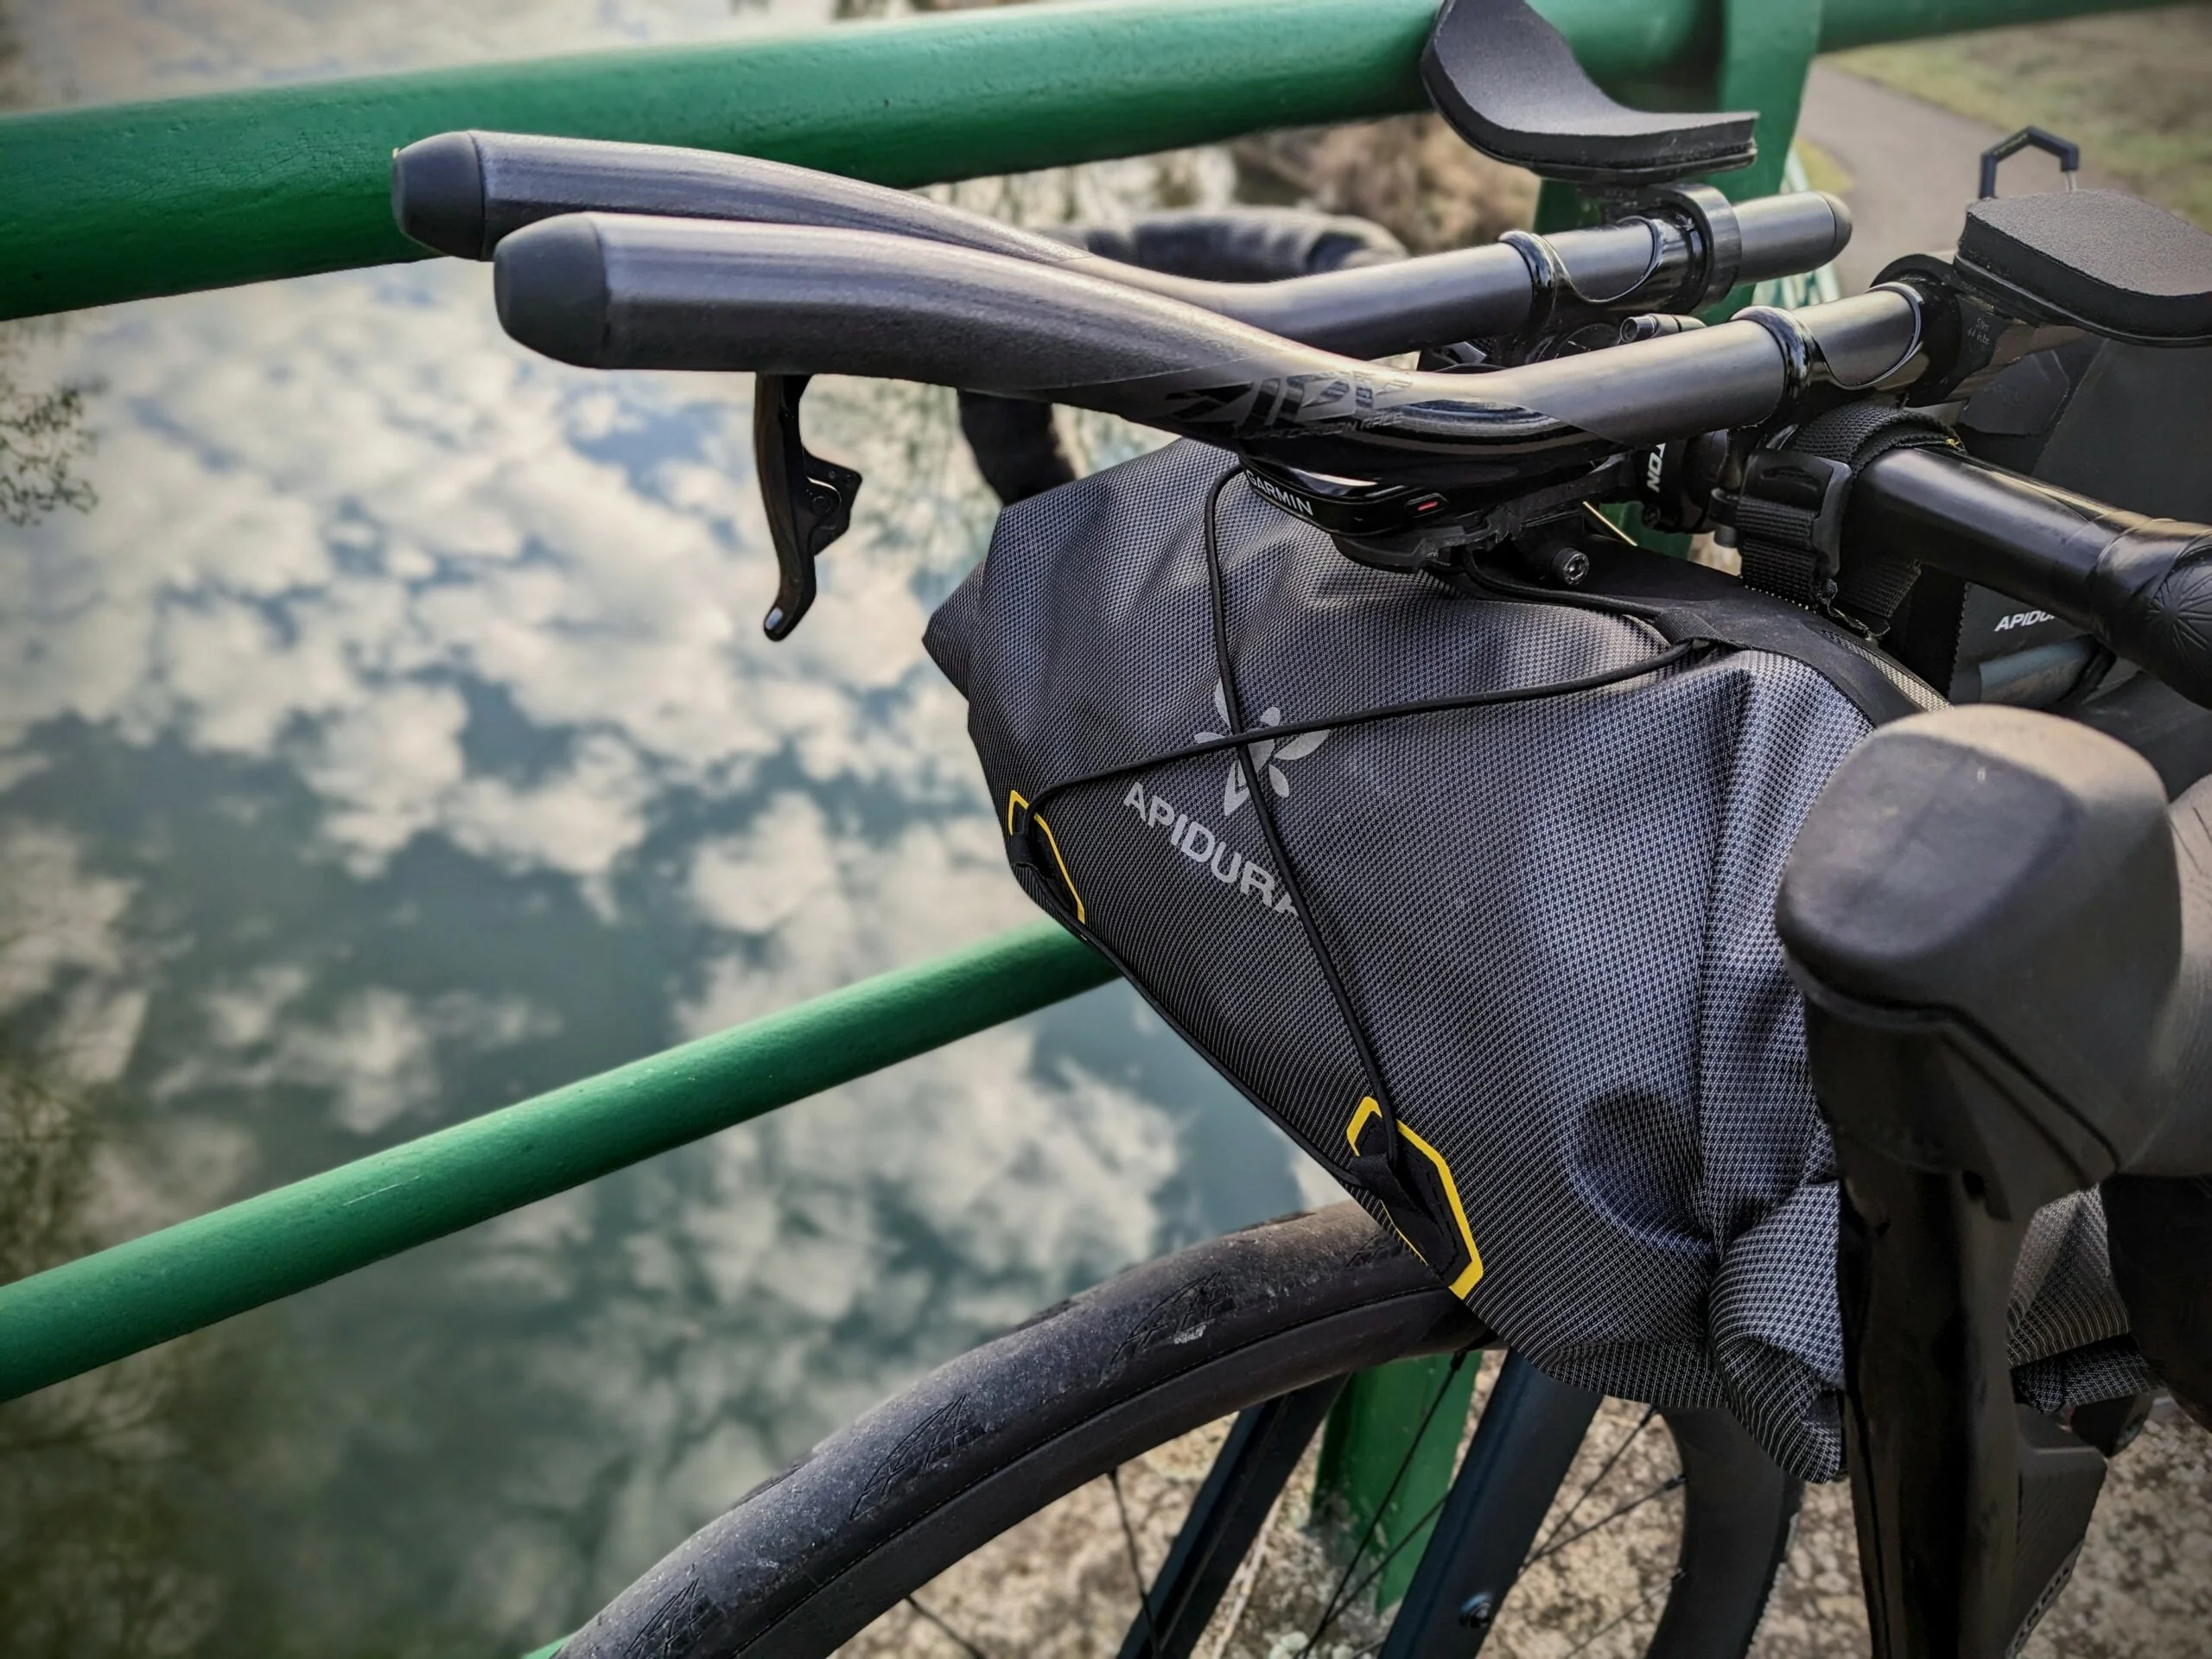 Prolongateurs en bikepacking - 5 modèles pour défier le vent